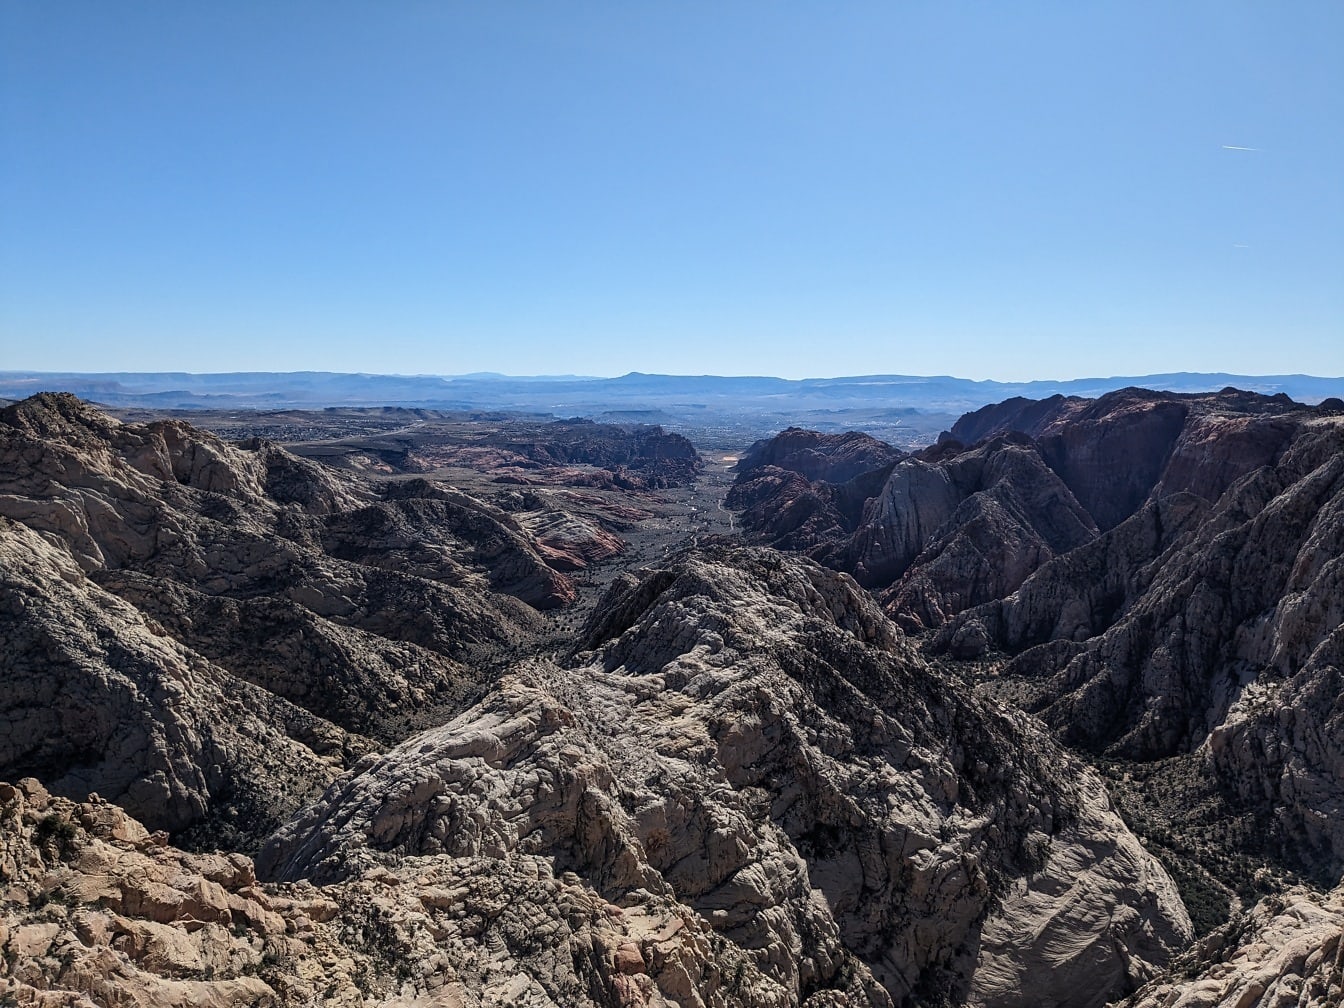 Πανοραμική θέα των βουνοκορφών της ερήμου και της κοιλάδας στο φυσικό πάρκο